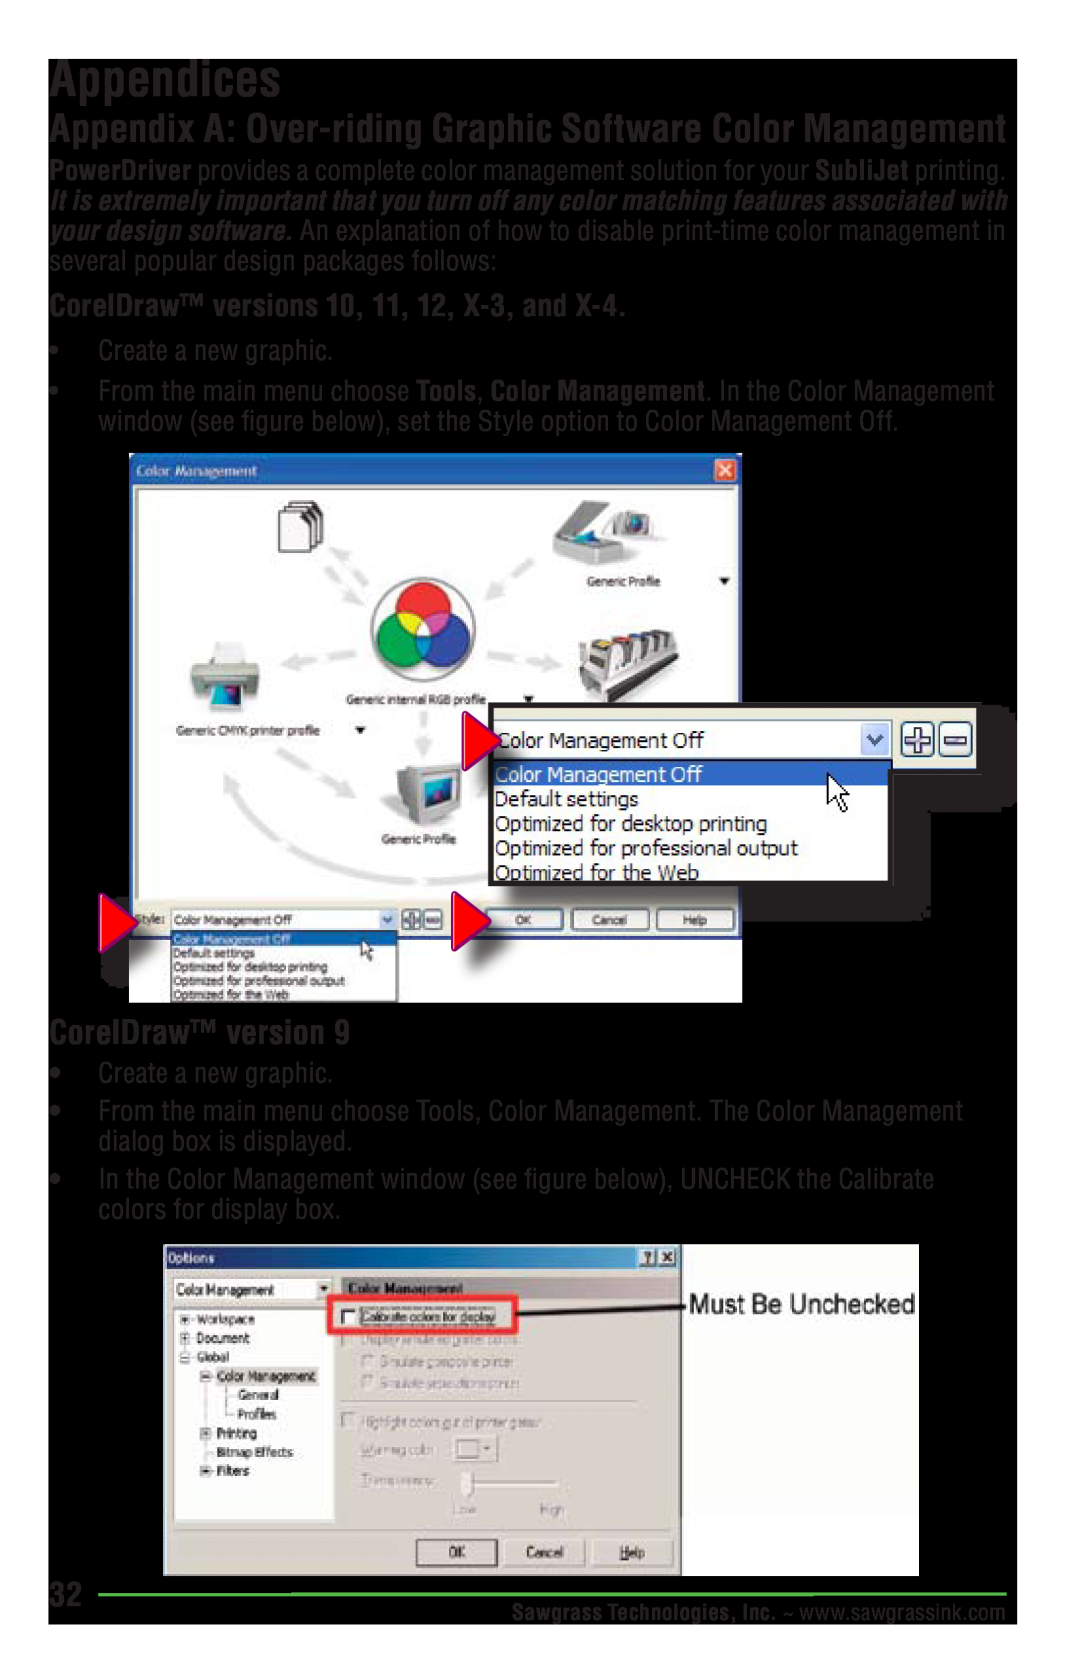 Epson R1900 manual Appendices, CorelDraw version, Appendix A Over-riding Graphic Software Color Management 